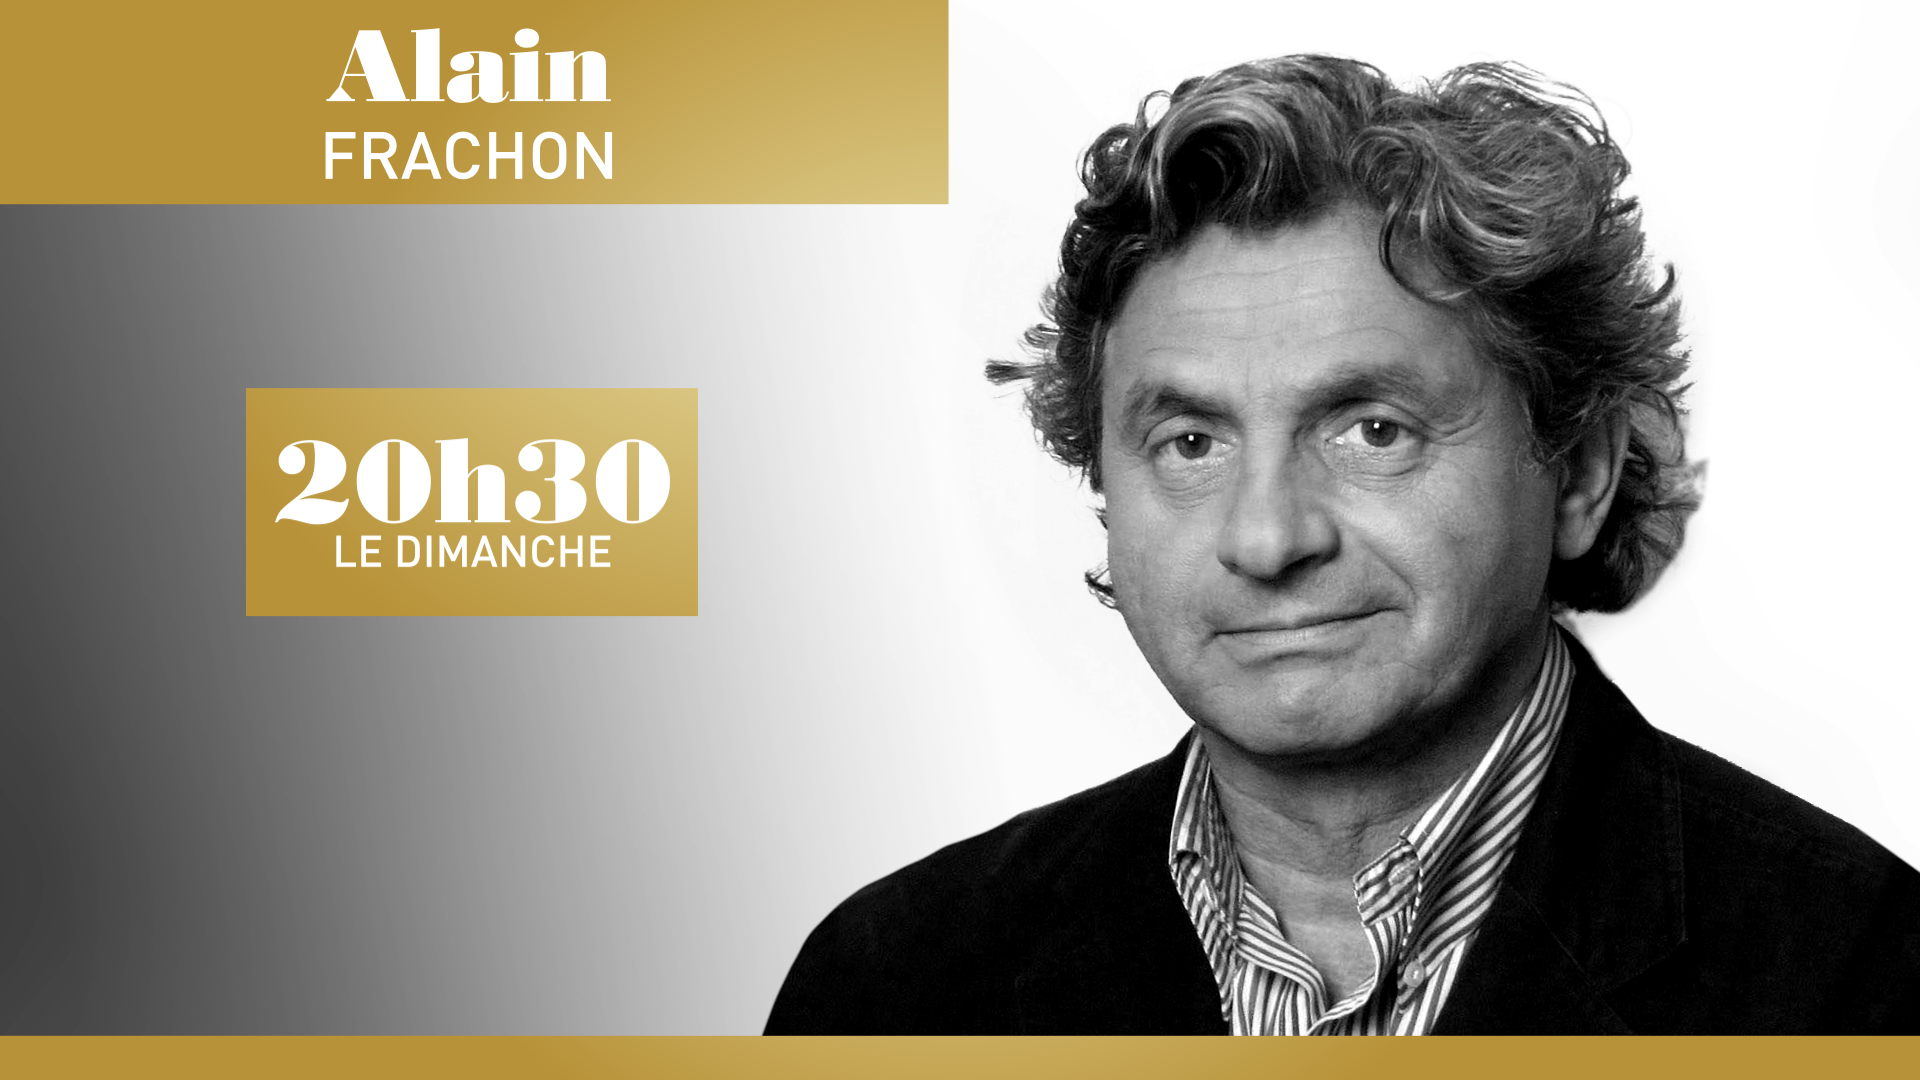 20h30 le dimanche - Alain Frachon